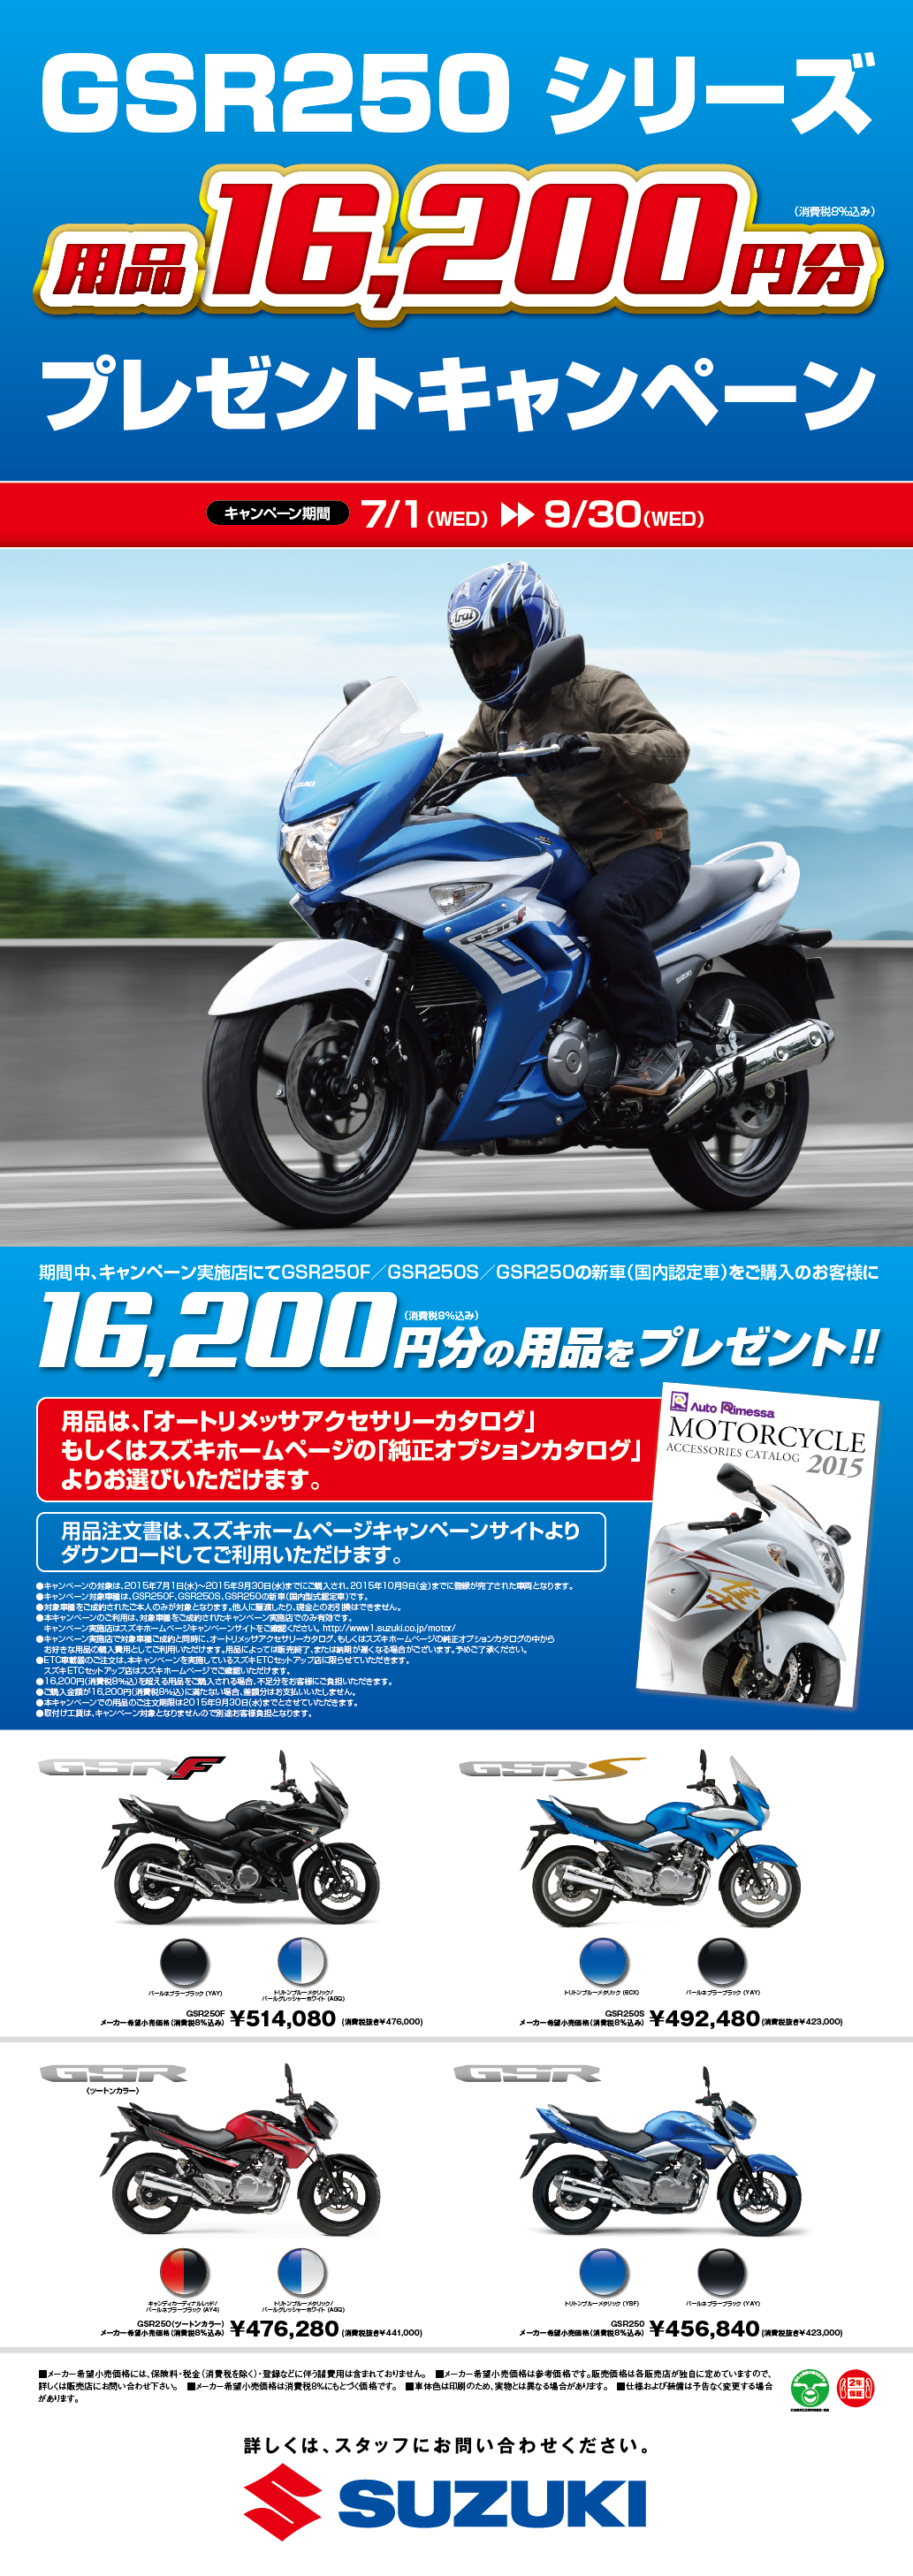 GSR250シリーズ_キャンペーン_ストリーマー-01 - コピー